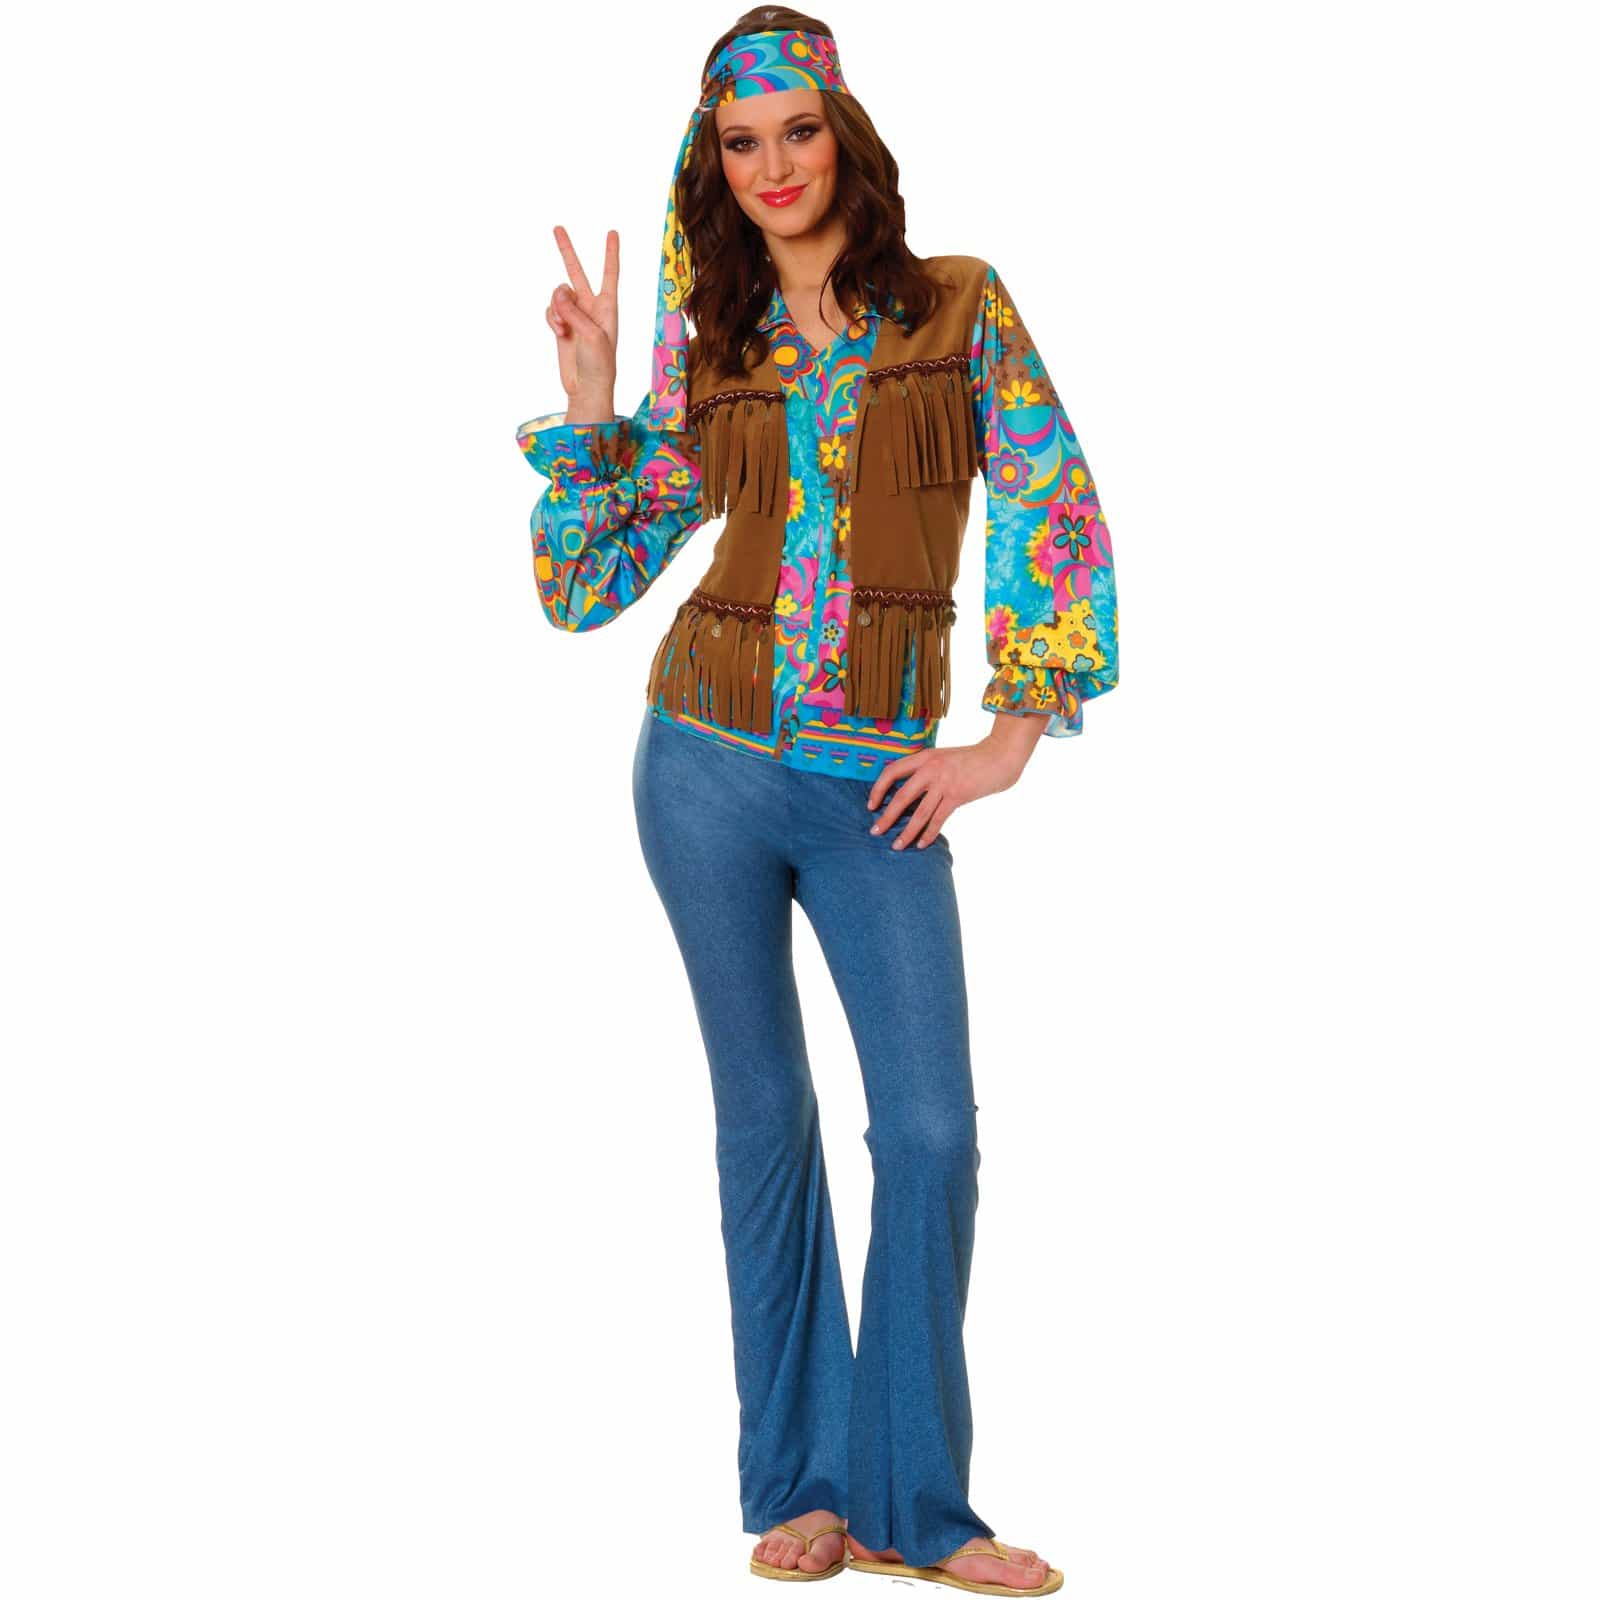 Moda Hippie no Brasil - Estilo Hippie: como usar